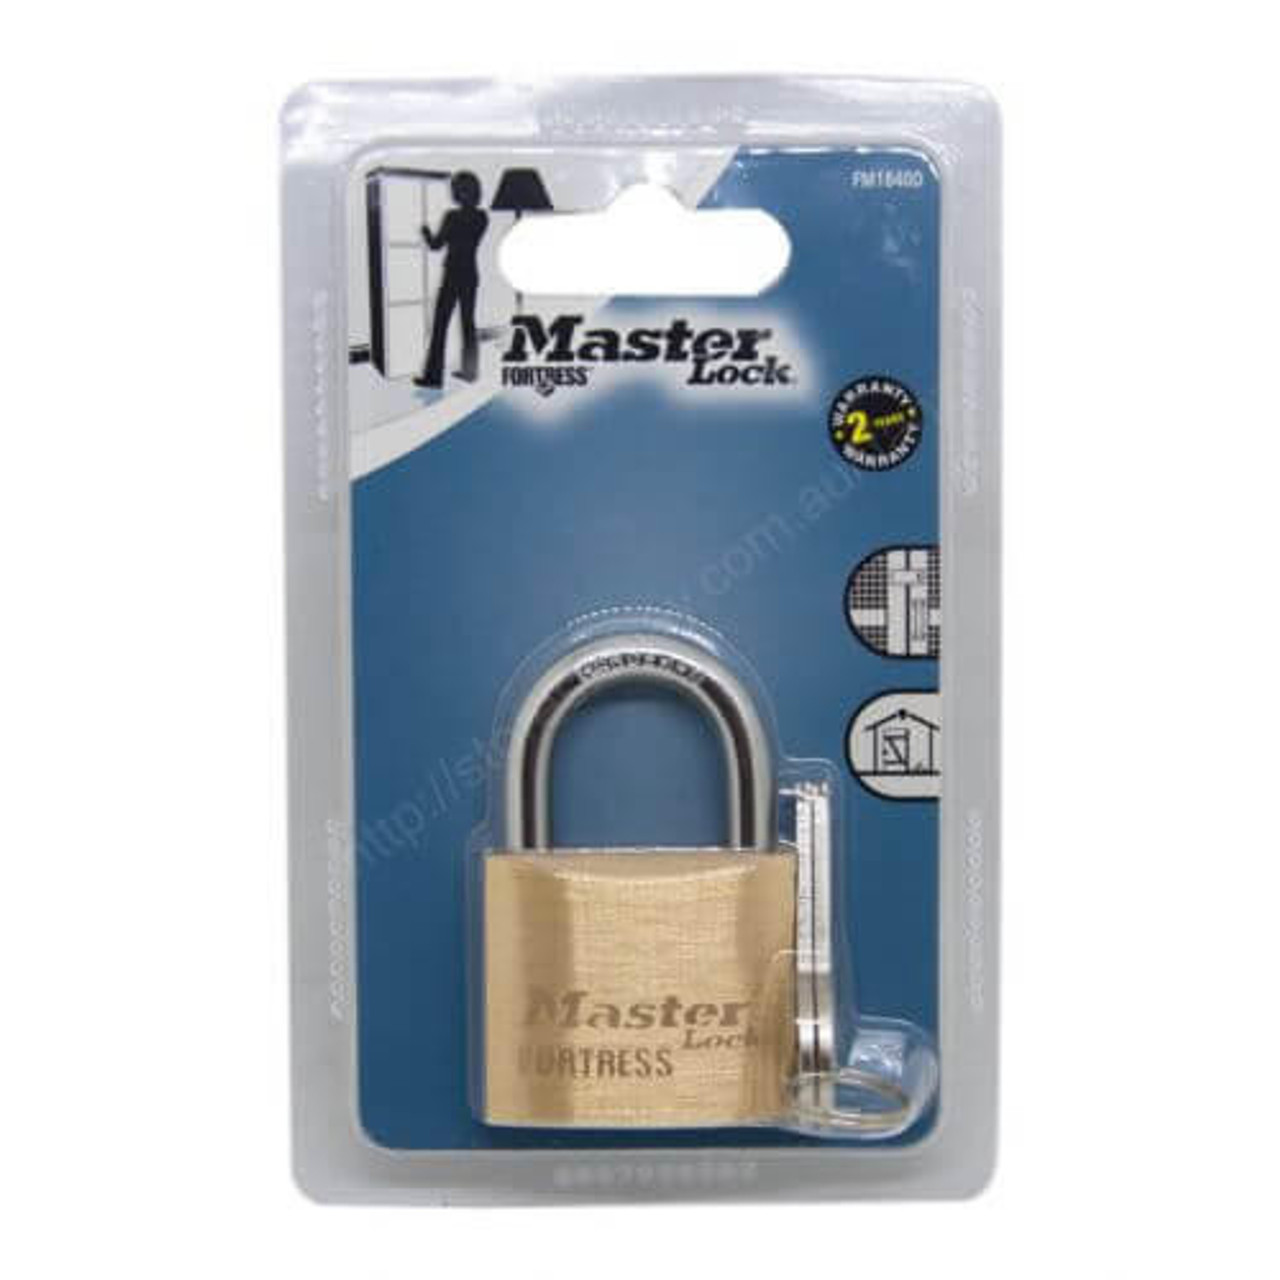 Master Lock Master Padlock Brass F/Tress 40x21MM 1pk Keyed To Differ FM1840DAU